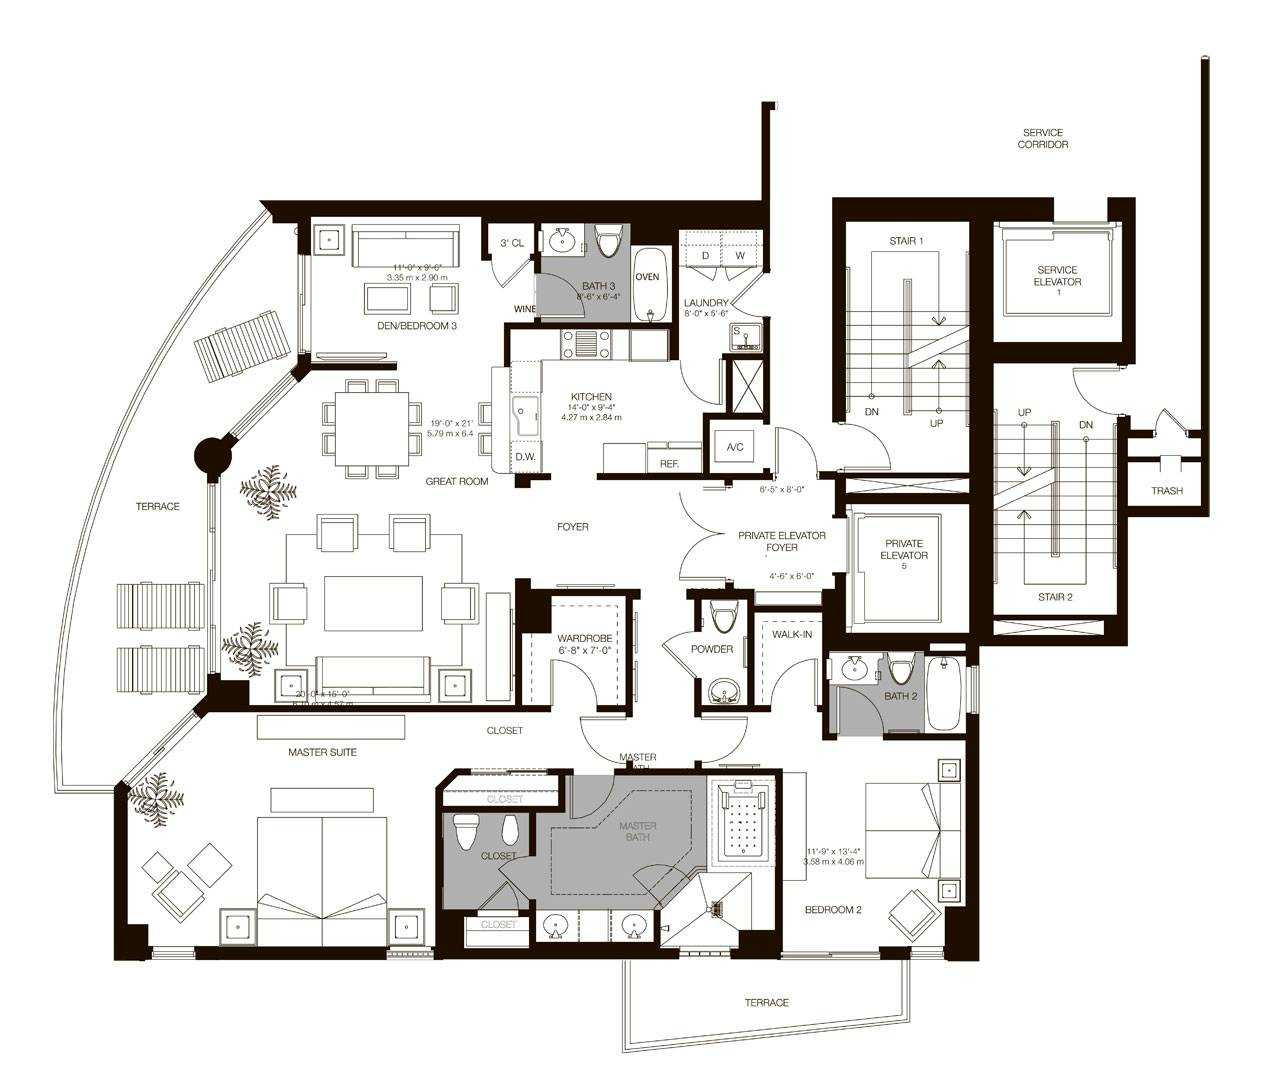 Residences 01 - 06, Level 5-33